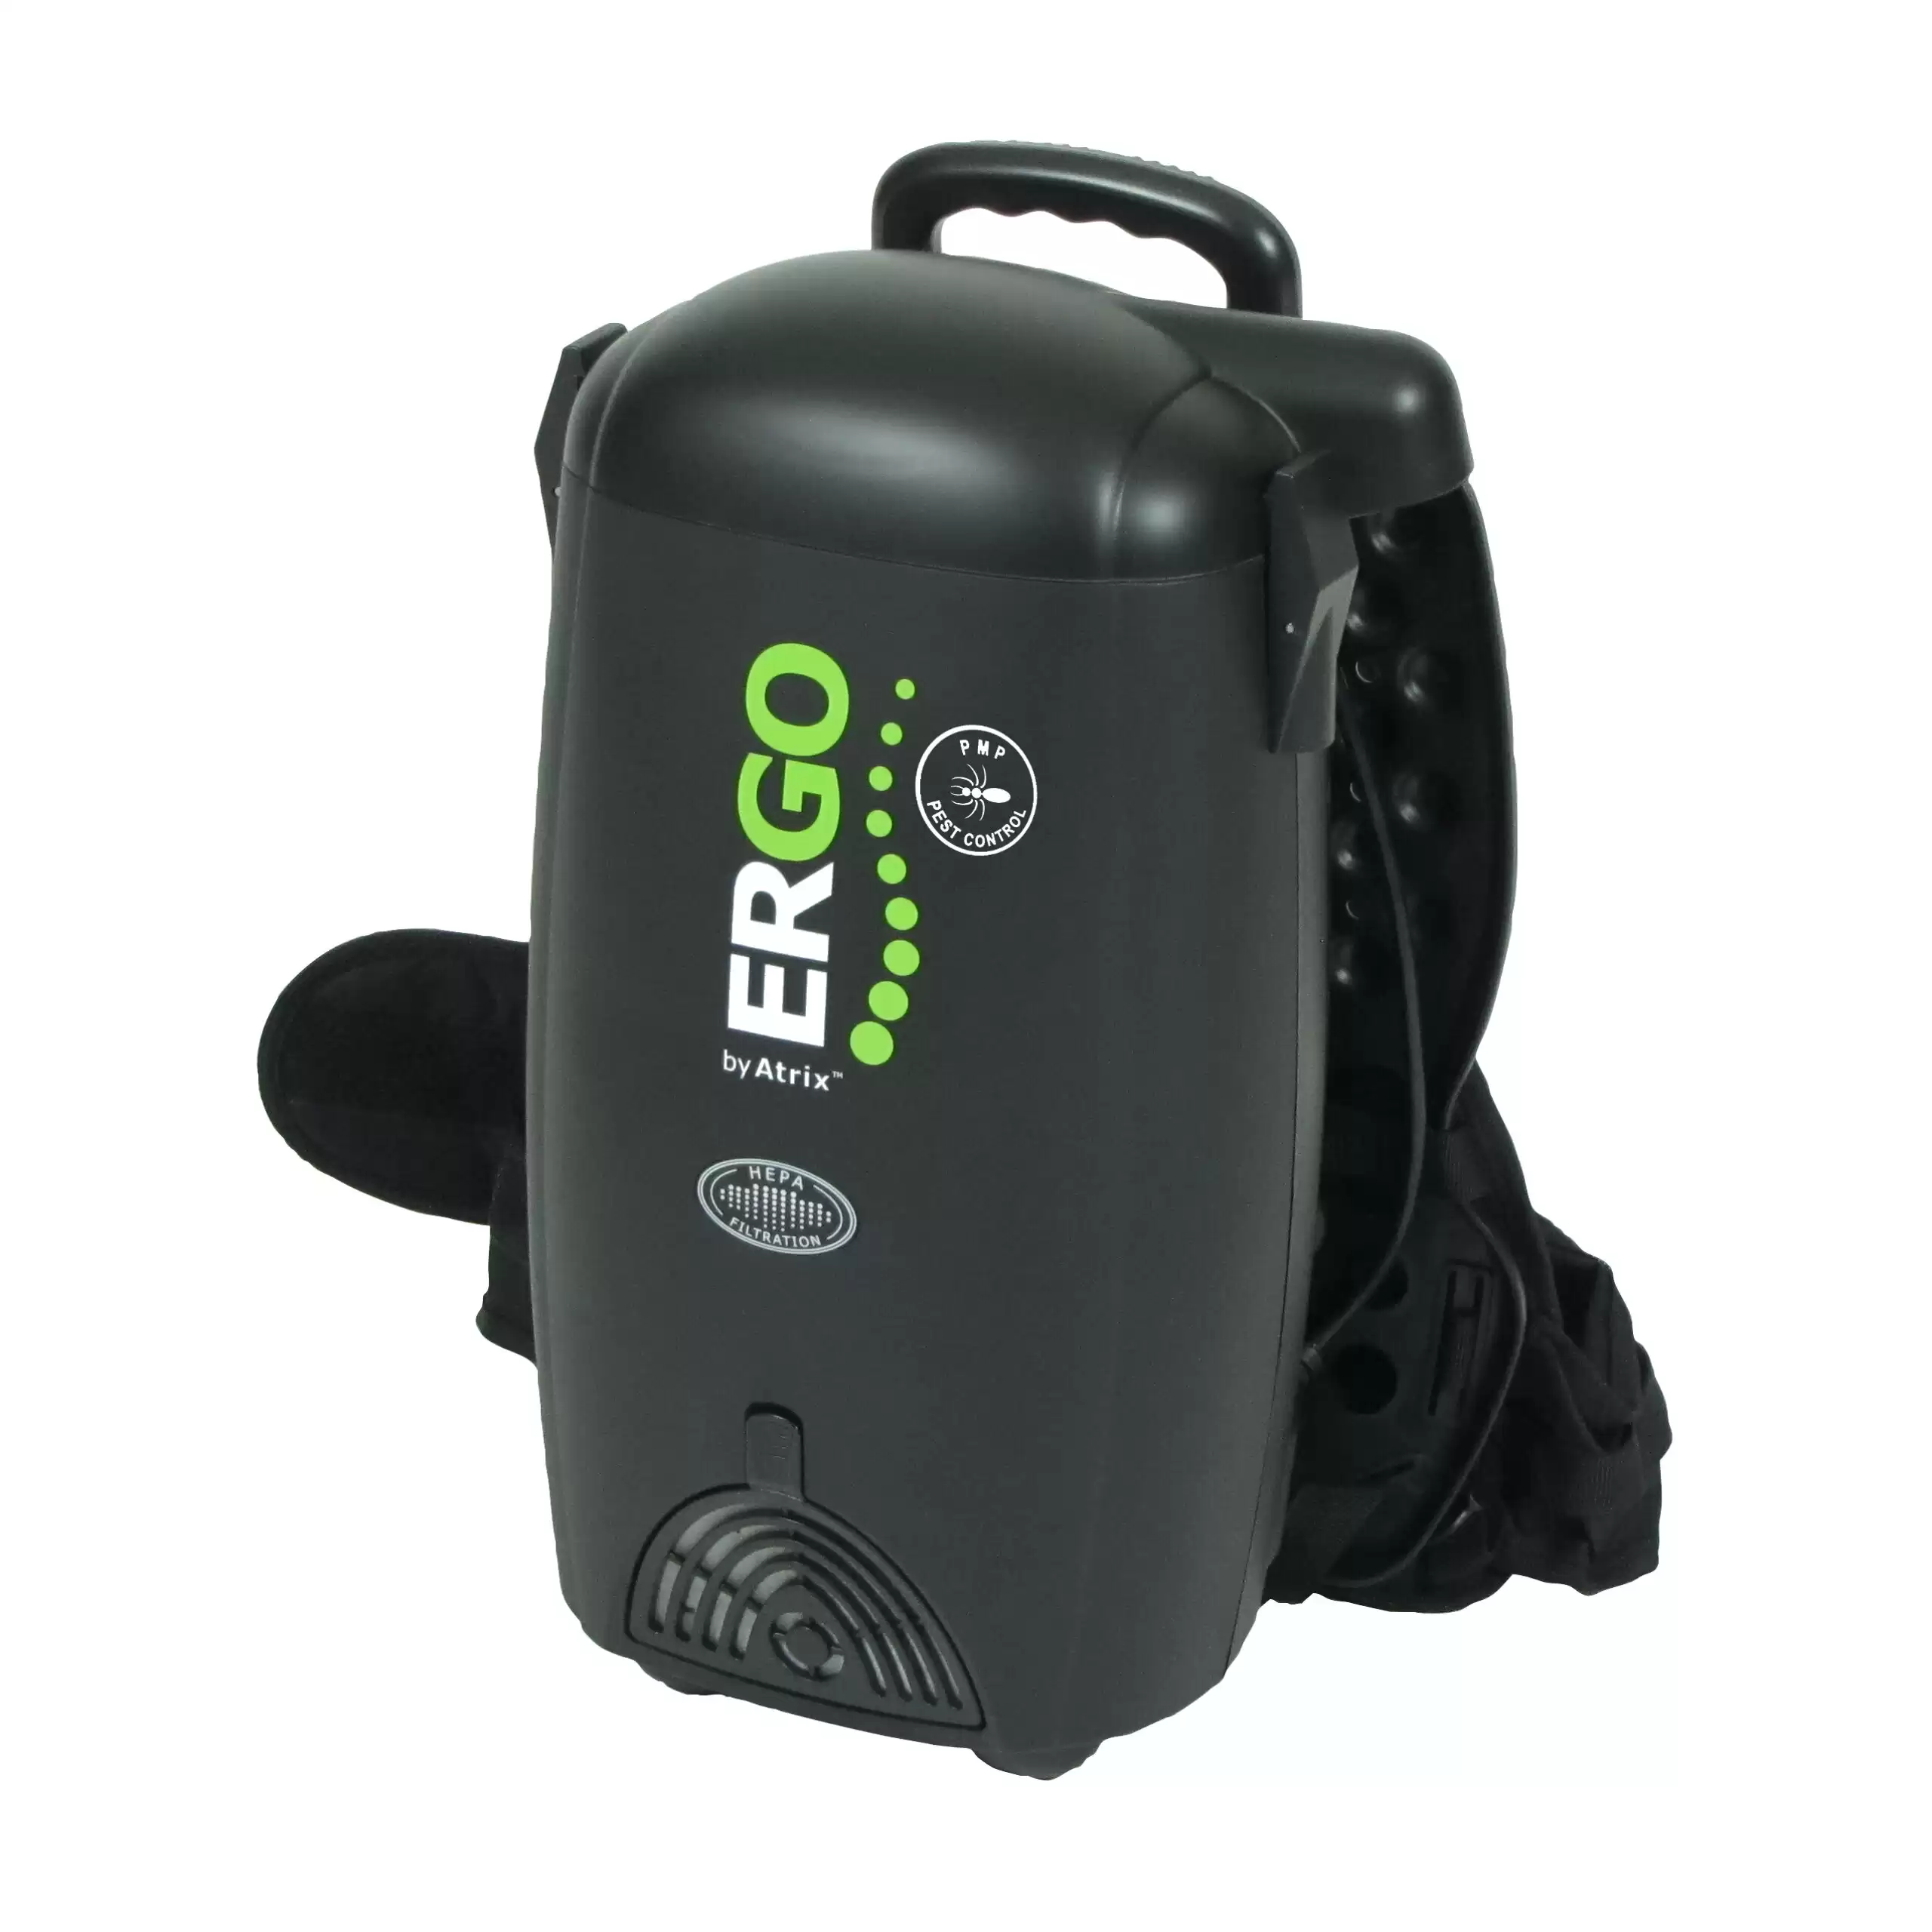 Atrix Ergo PMP Backpack Vacuum